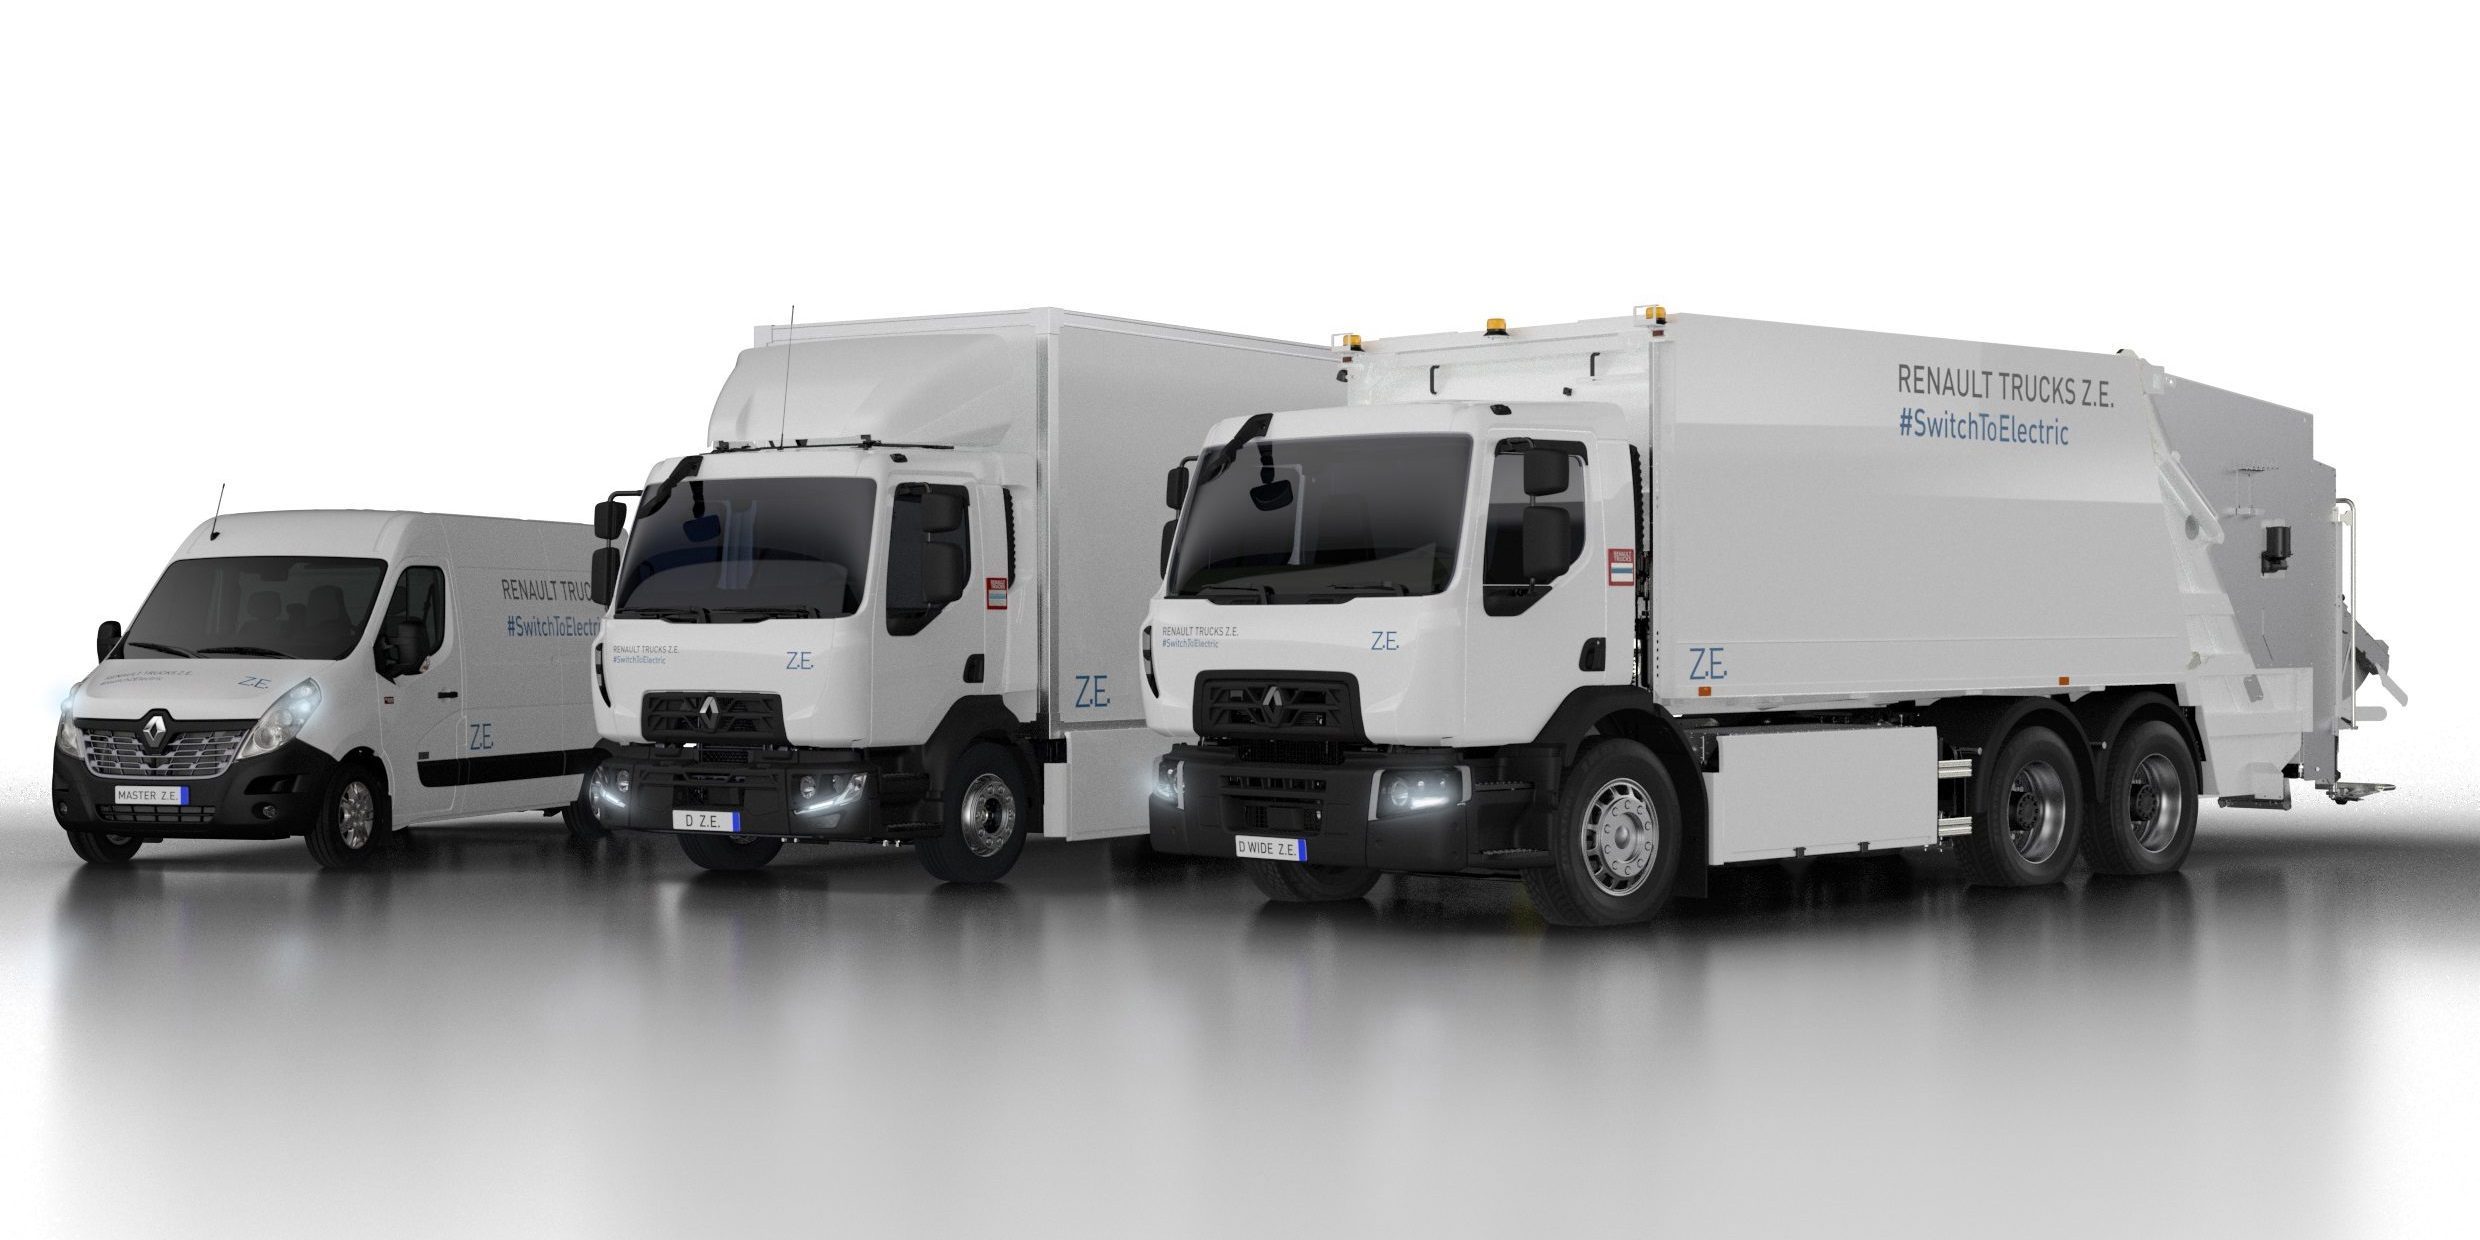 Renault Trucks, yeni nesil elektrikli kamyonlarını tanıttı